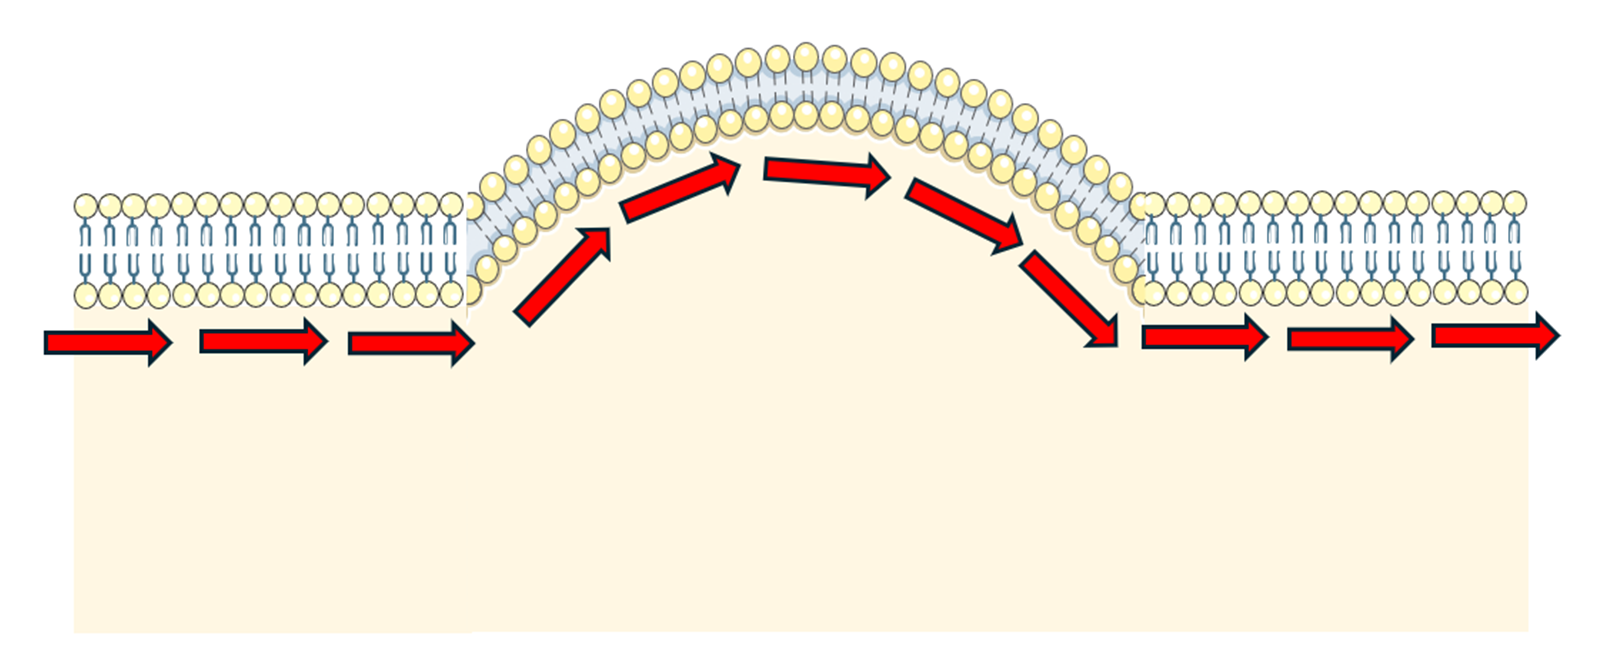 Figure 6 undulation in the lipid bilayer